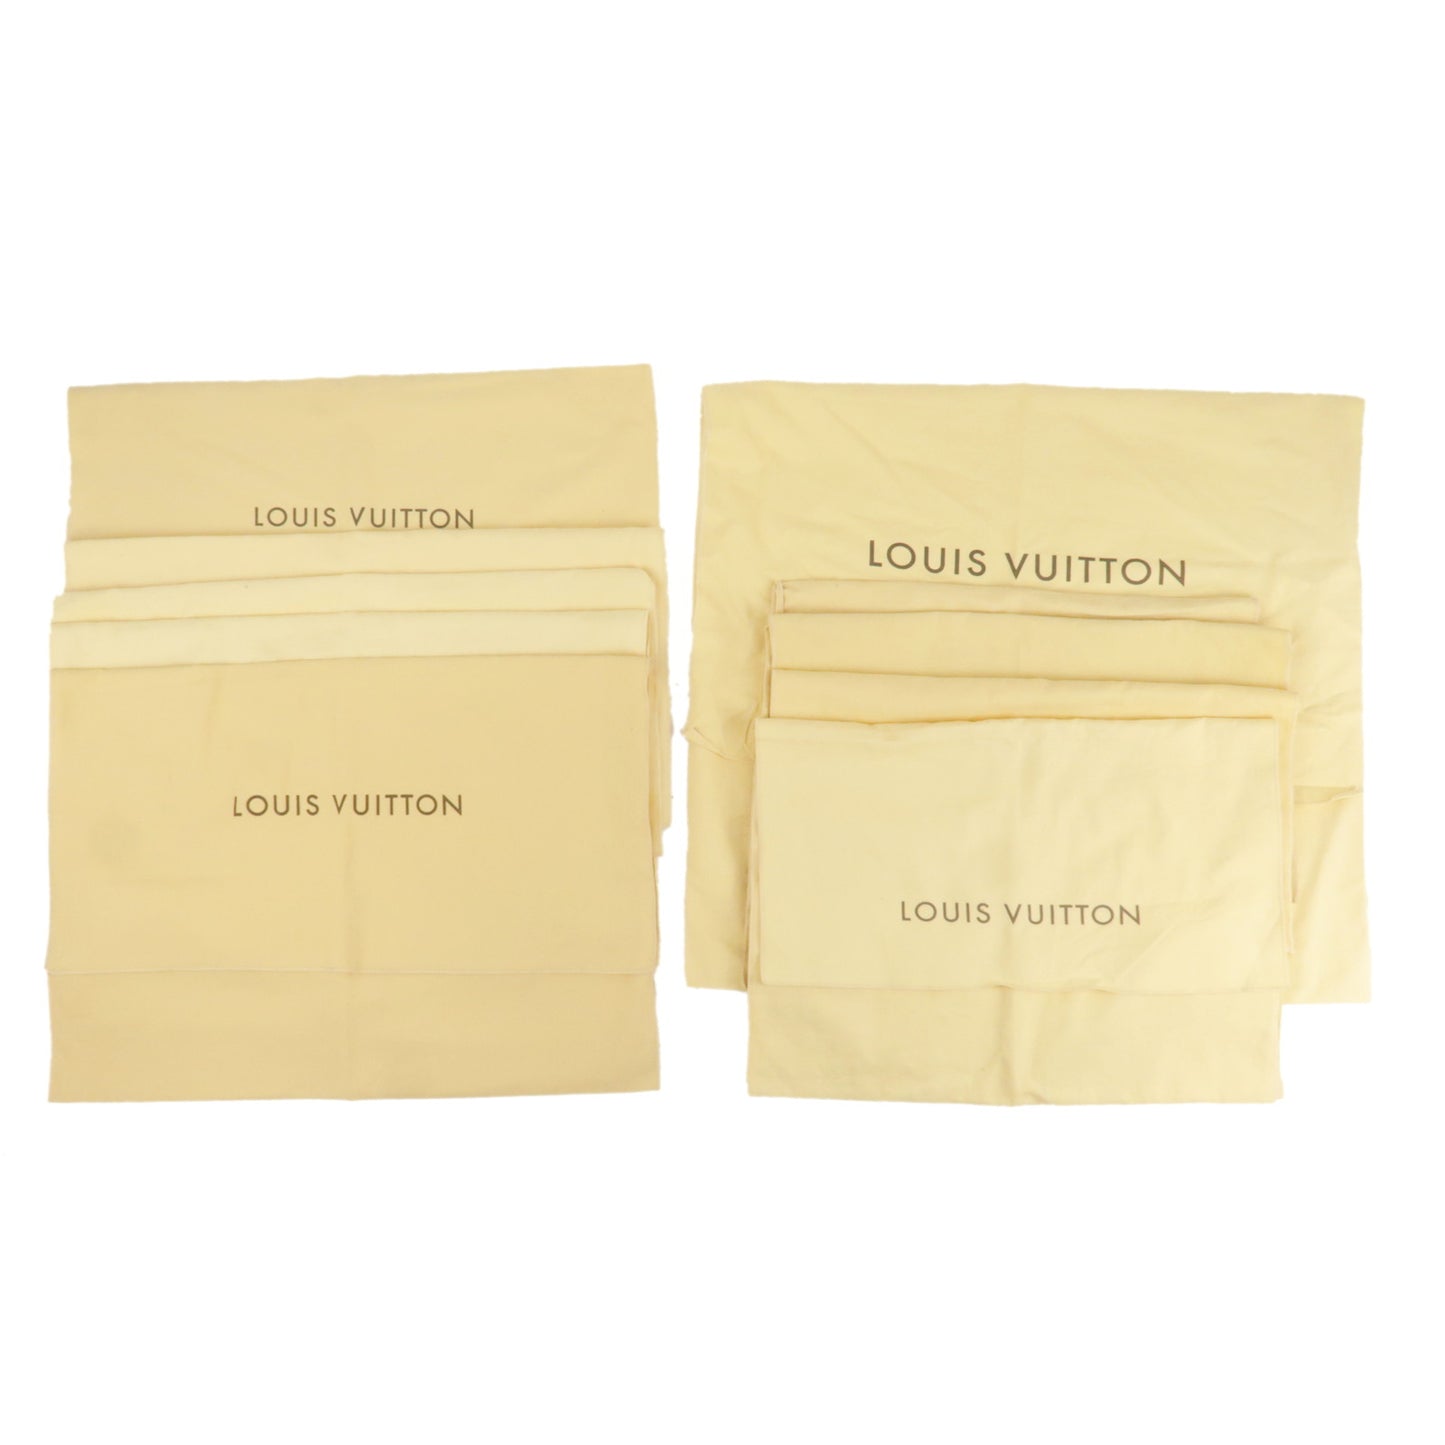 Louis Vuitton Set of 10 Dust Bag Flap Style Beige